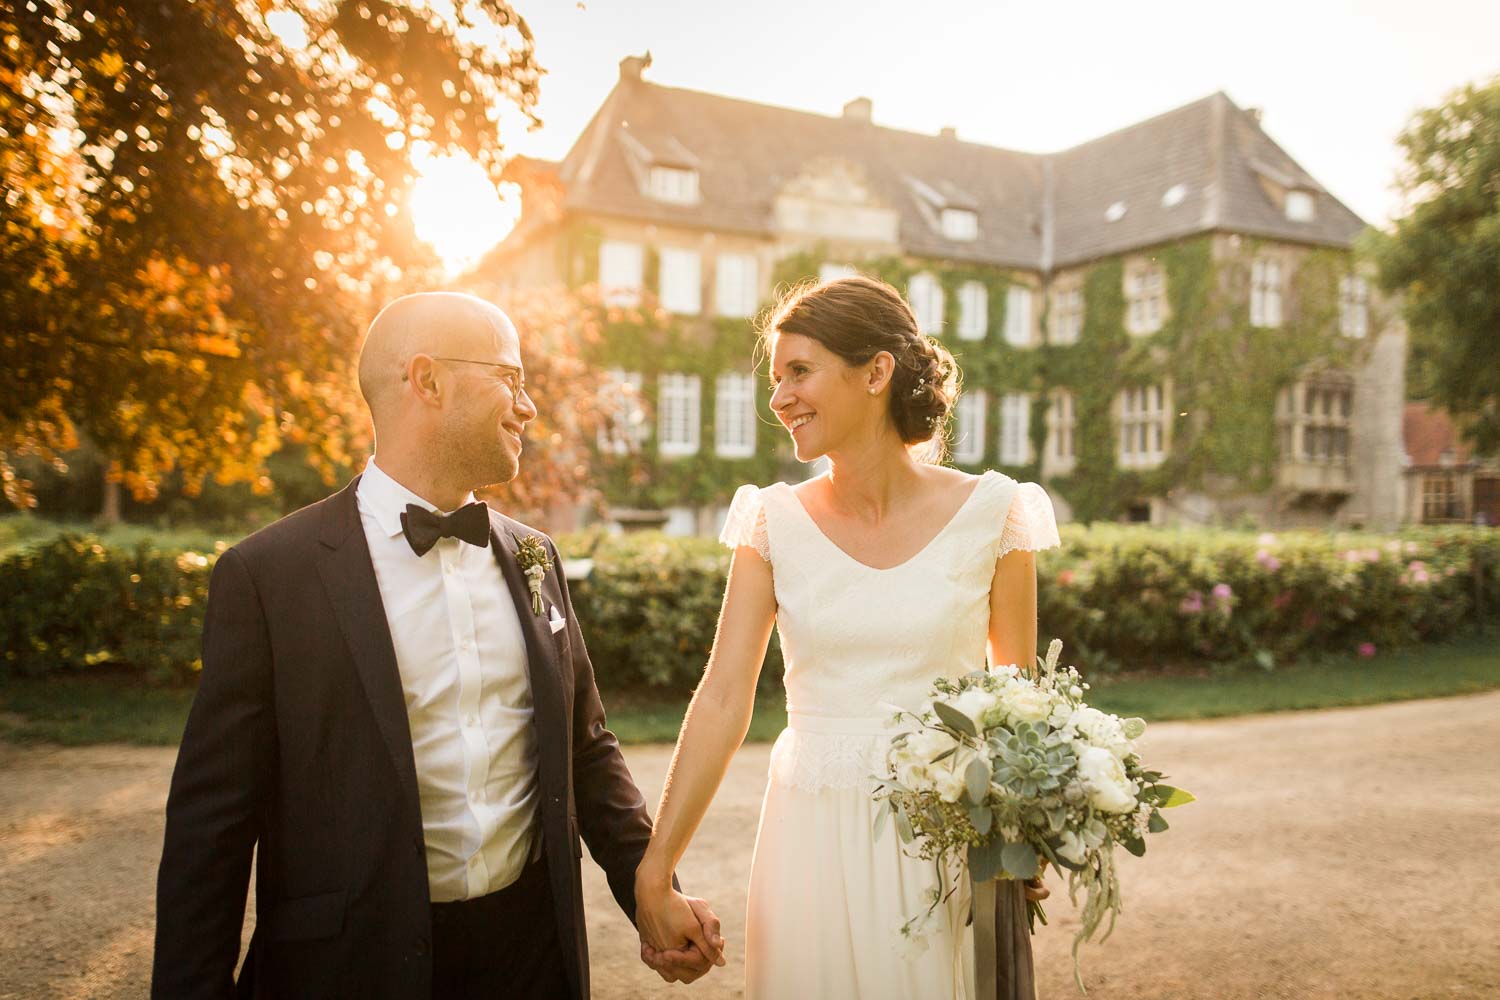 Hochzeitsfotos während der golden Hour. Im Vordergrund lächelt sich das Brautpaar glücklich an. Im Hintergrund ist die Hochzeitslocation Haus Ruhr zu sehen.